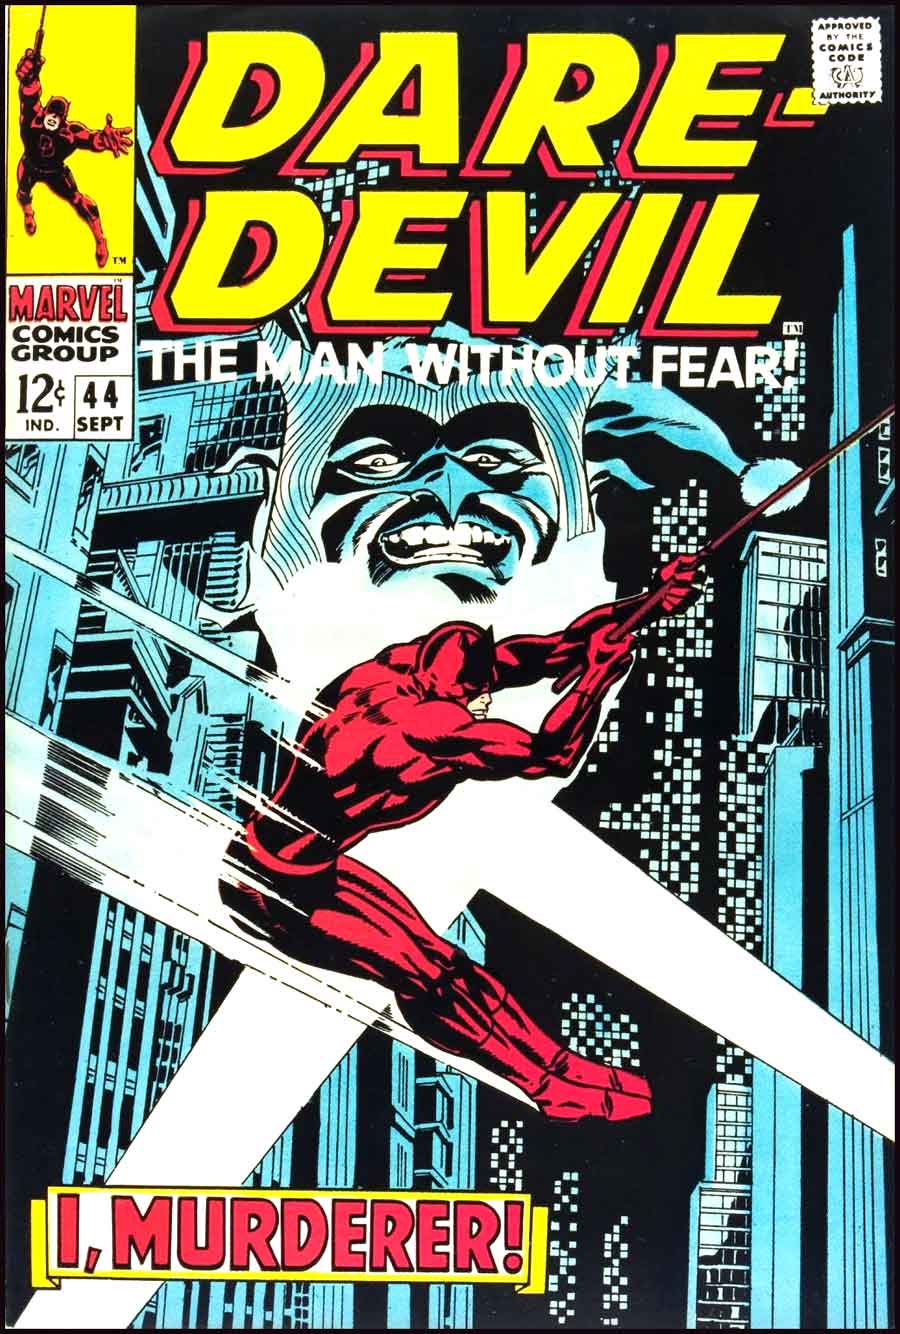 Daredevil v1 #44 marvel 1960s silver age comic book cover art by Jim Steranko